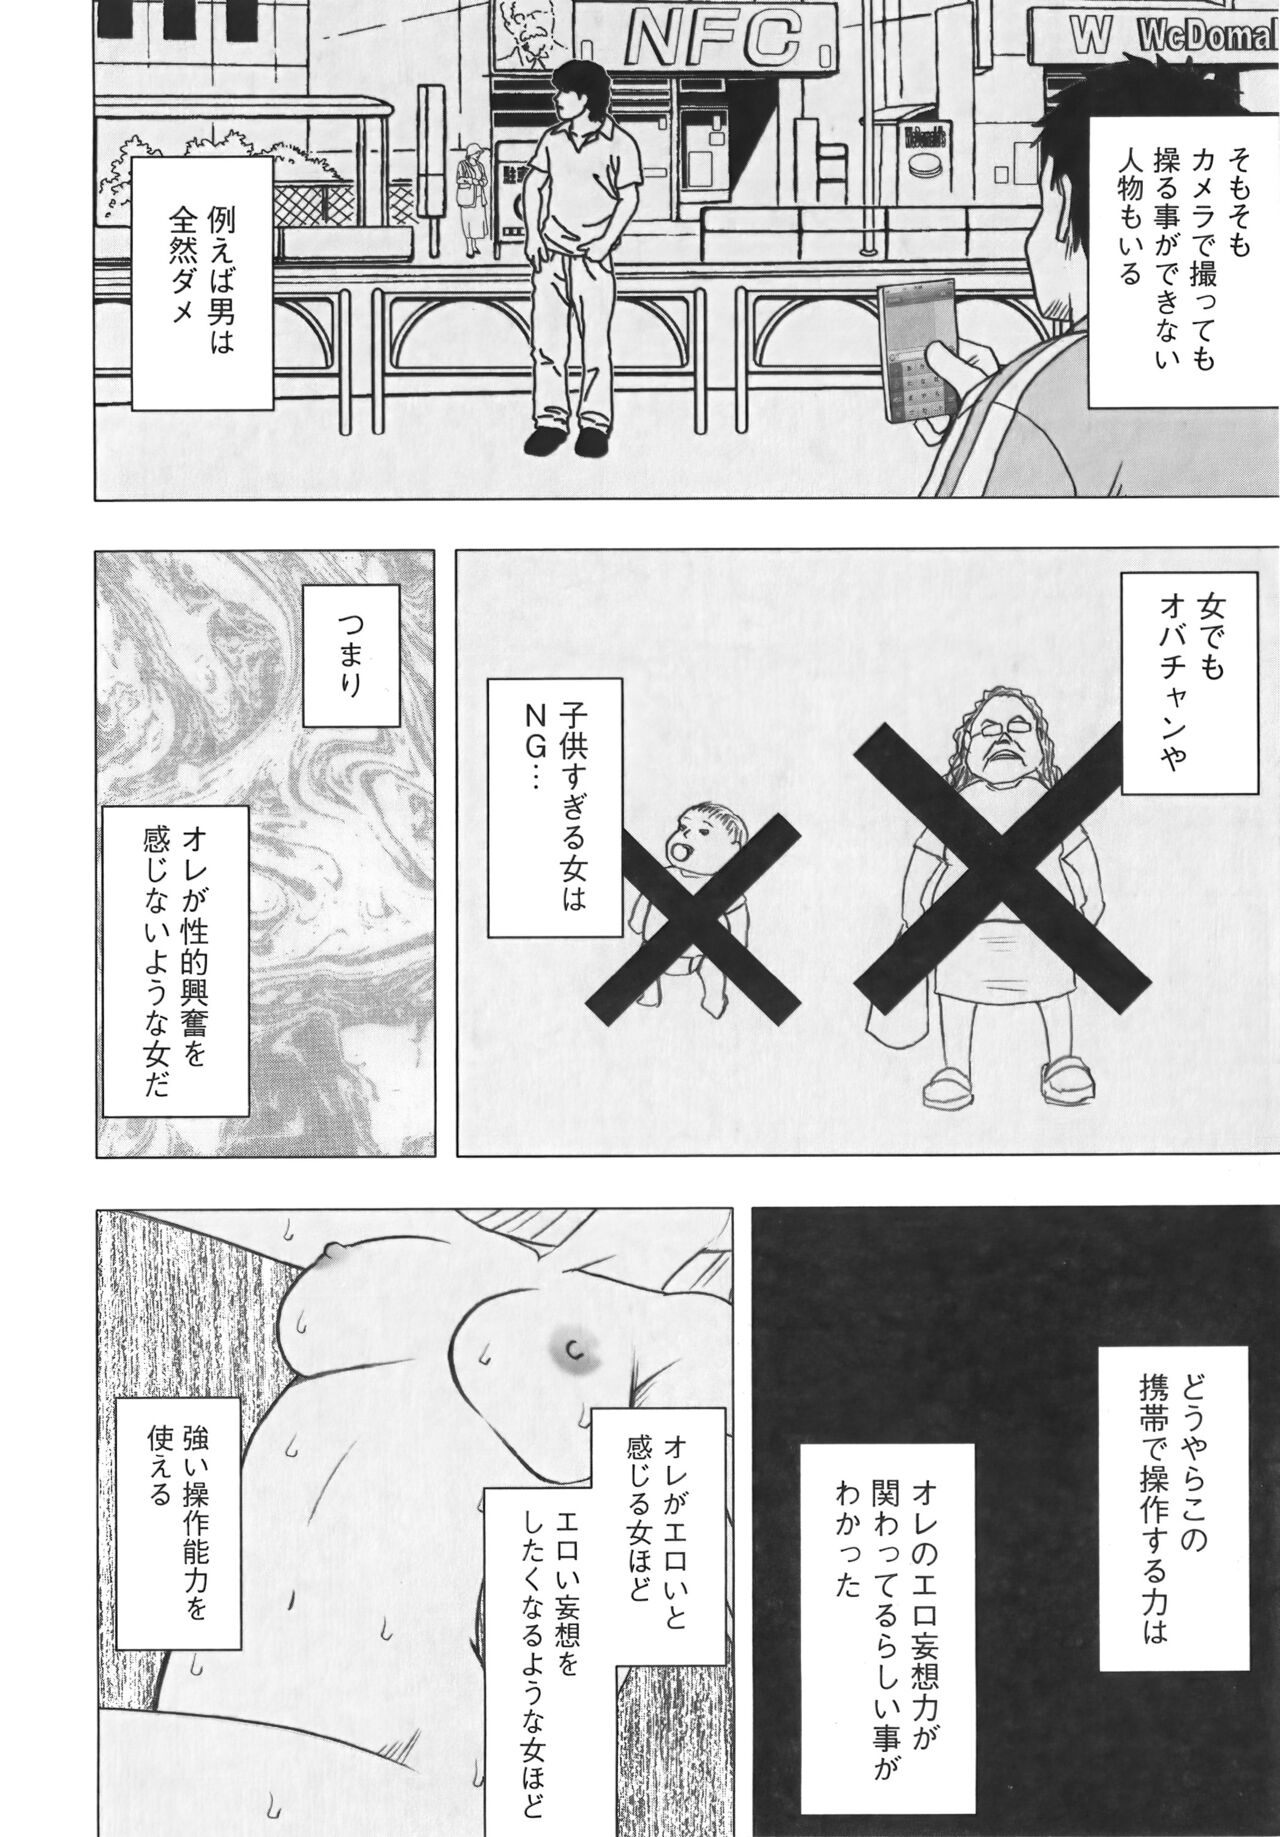 [Crimson] Idol Kyousei Sousa Vol.1 Smartphone de Meireishita Koto ga Genjitsu ni [Complete Edition] 89